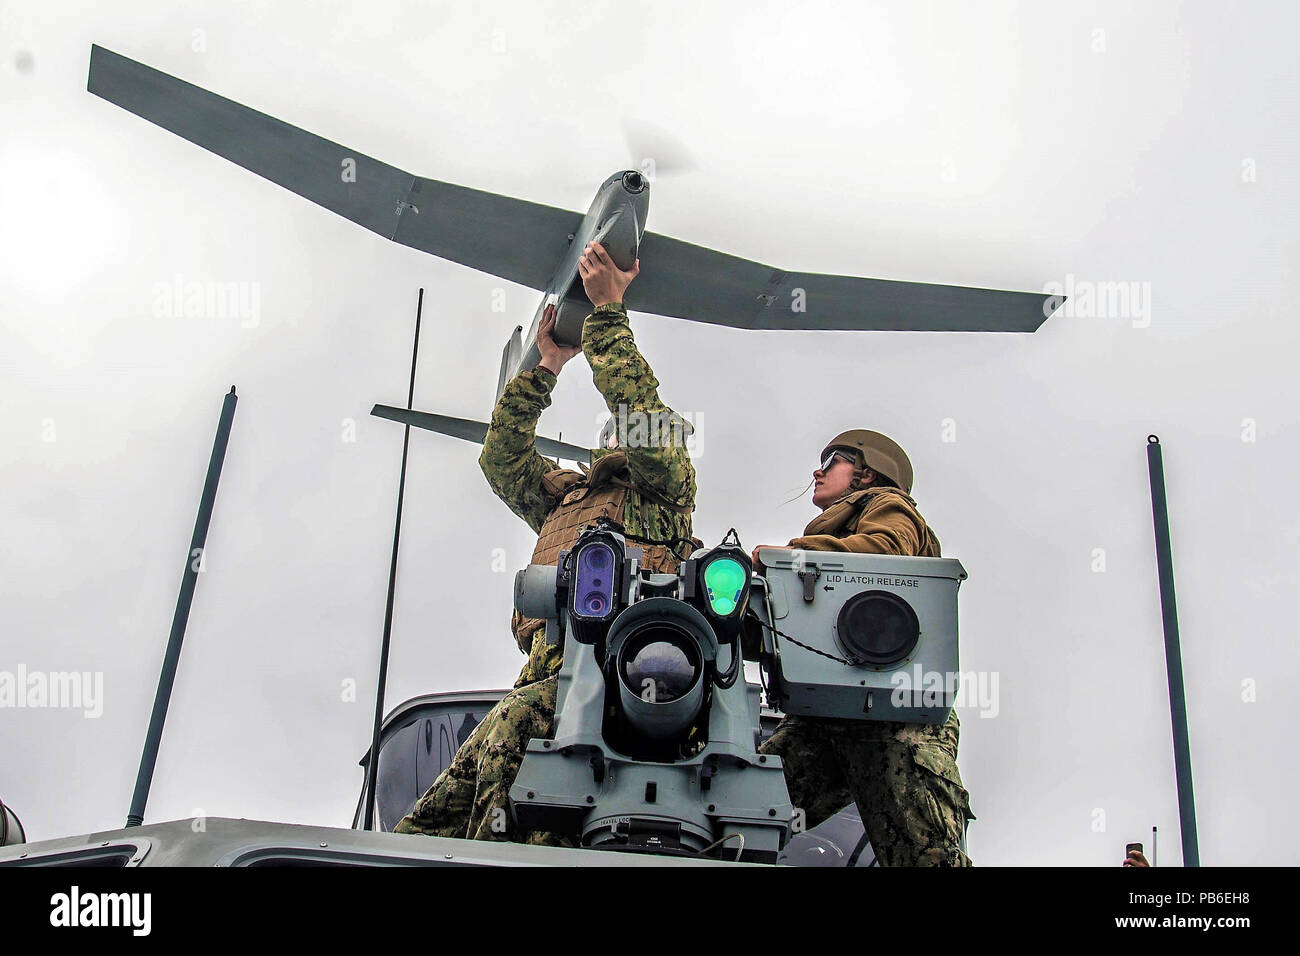 Chief Boatswain's Mate y 2ª clase Engineman durante el lanzamiento del vehículo aéreo no tripulado (UAV) durante el ejercicio de capacitación de UAV Foto de stock